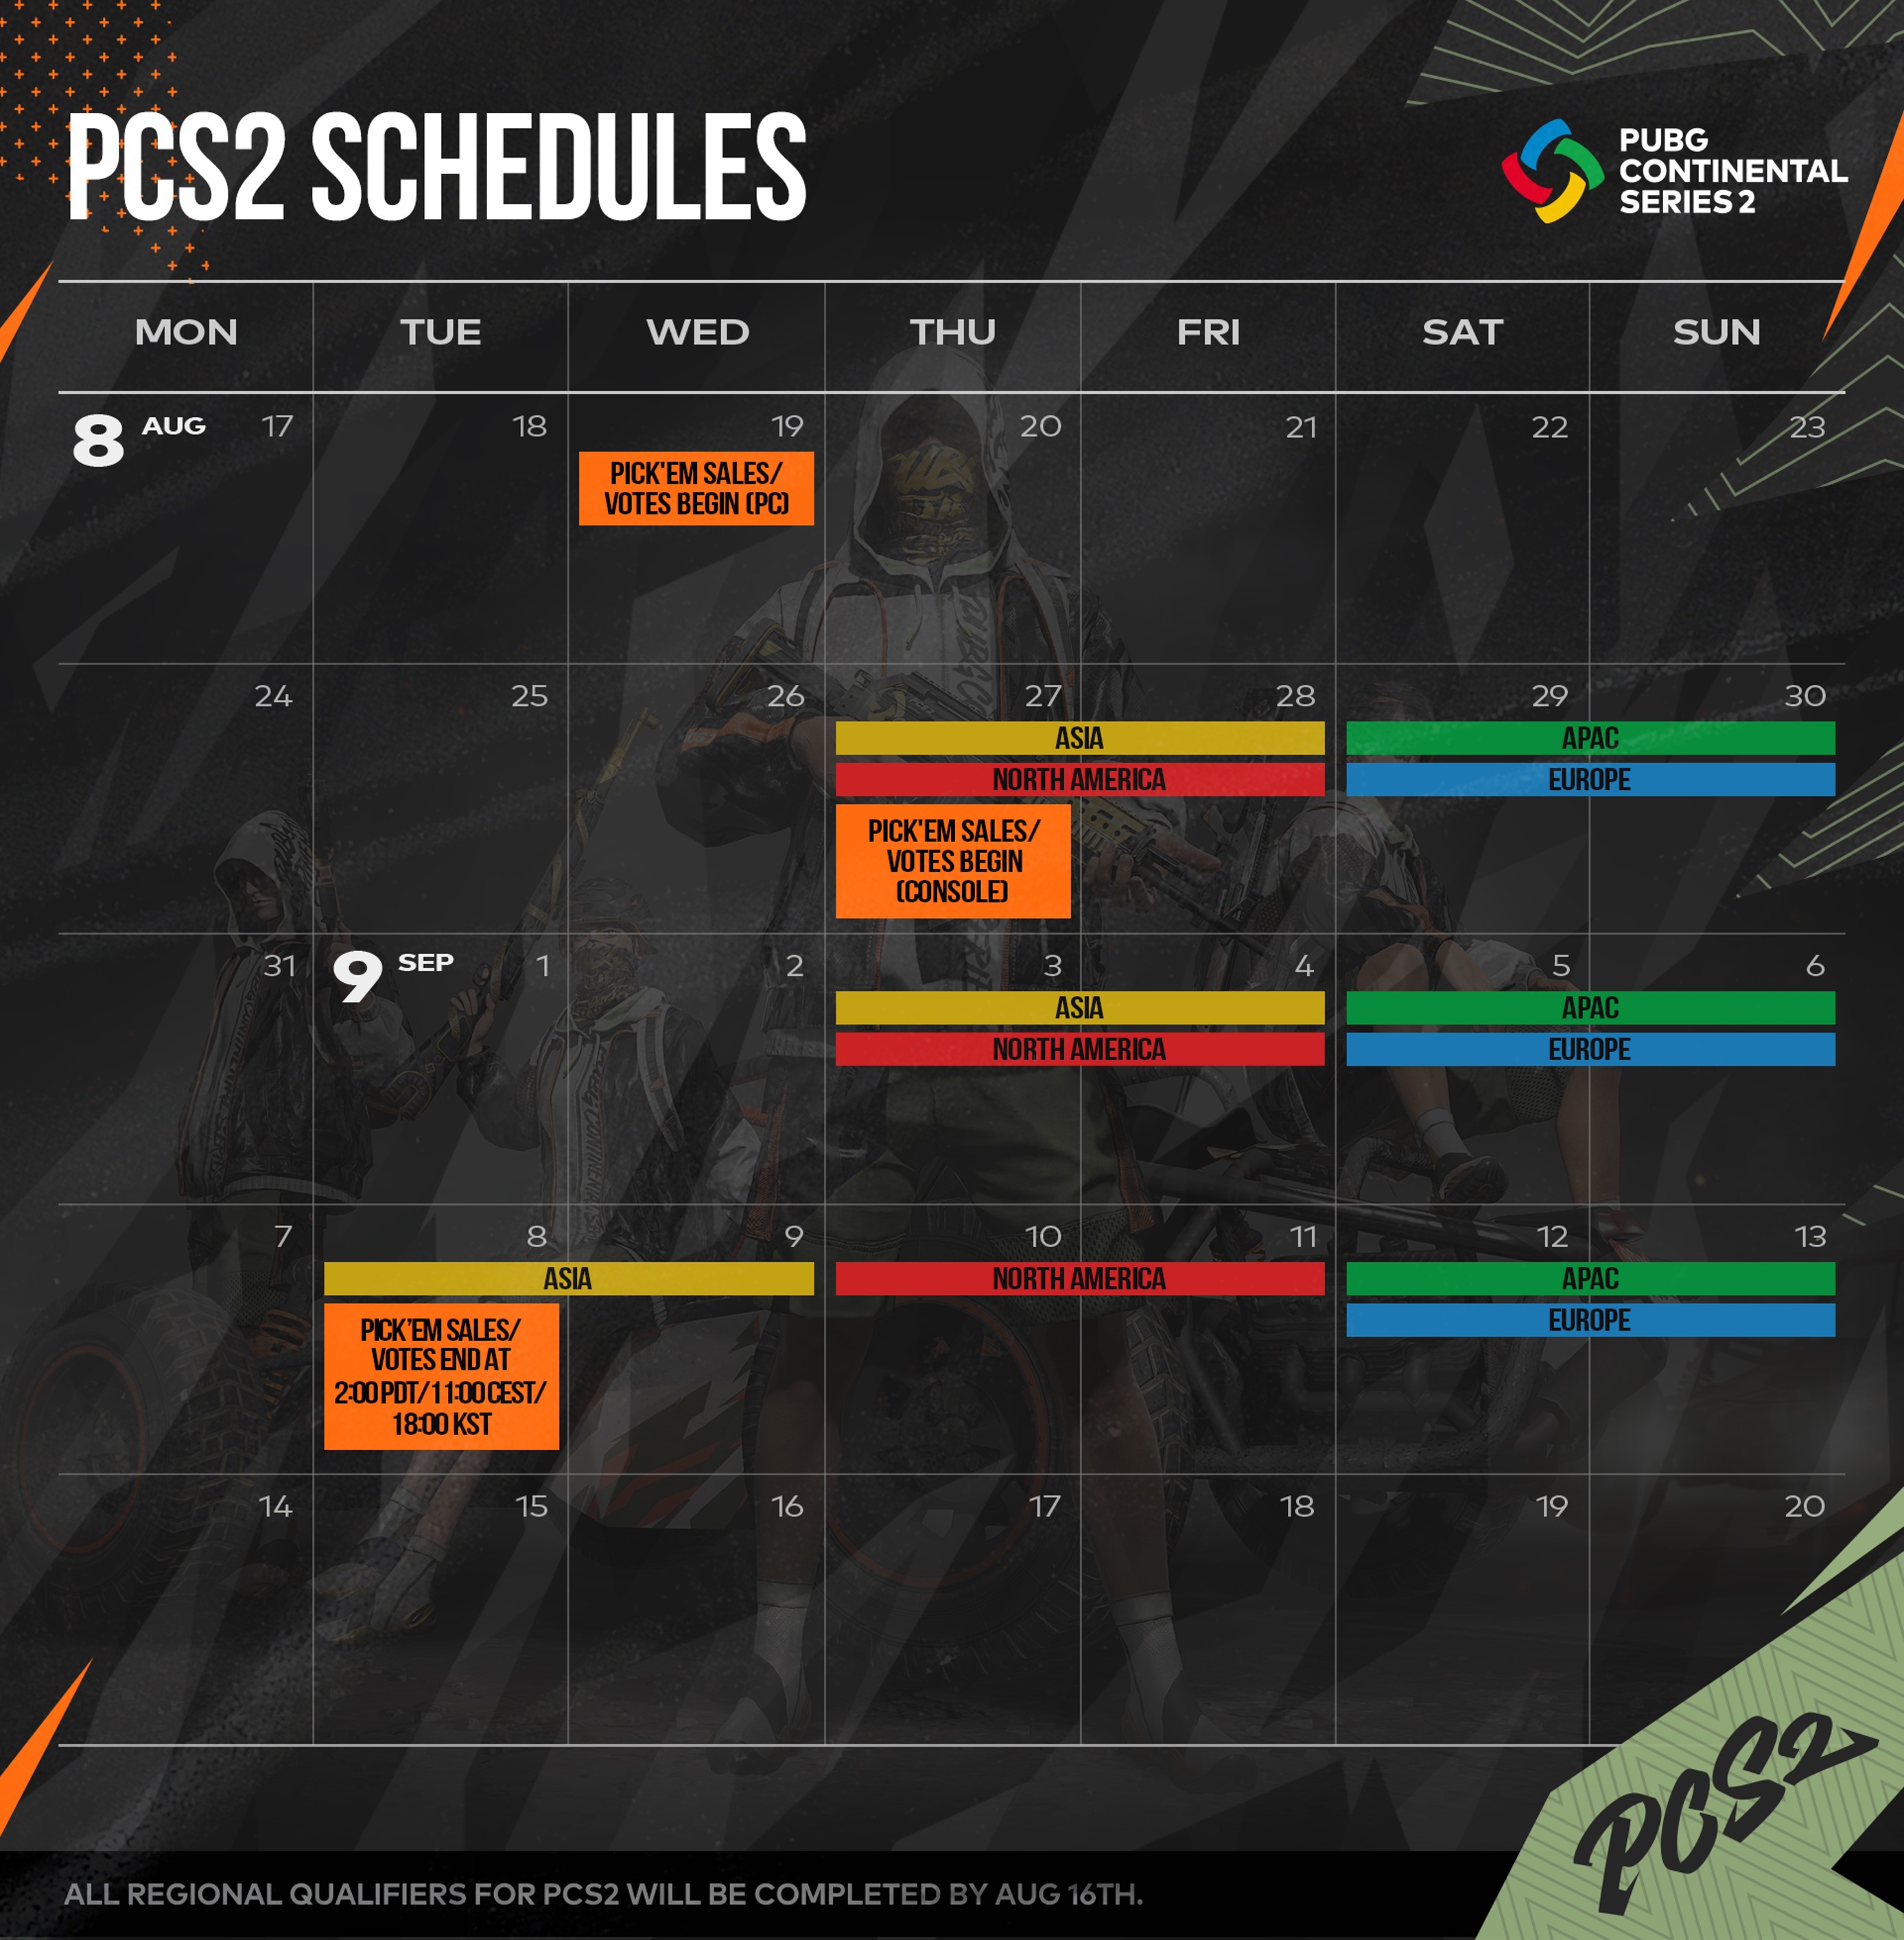 pcs2 schedules เอเซอร์ประกาศเป็นผู้สนับสนุนอย่างเป็นทางการในศึก PUBG Continental Series 2 APAC